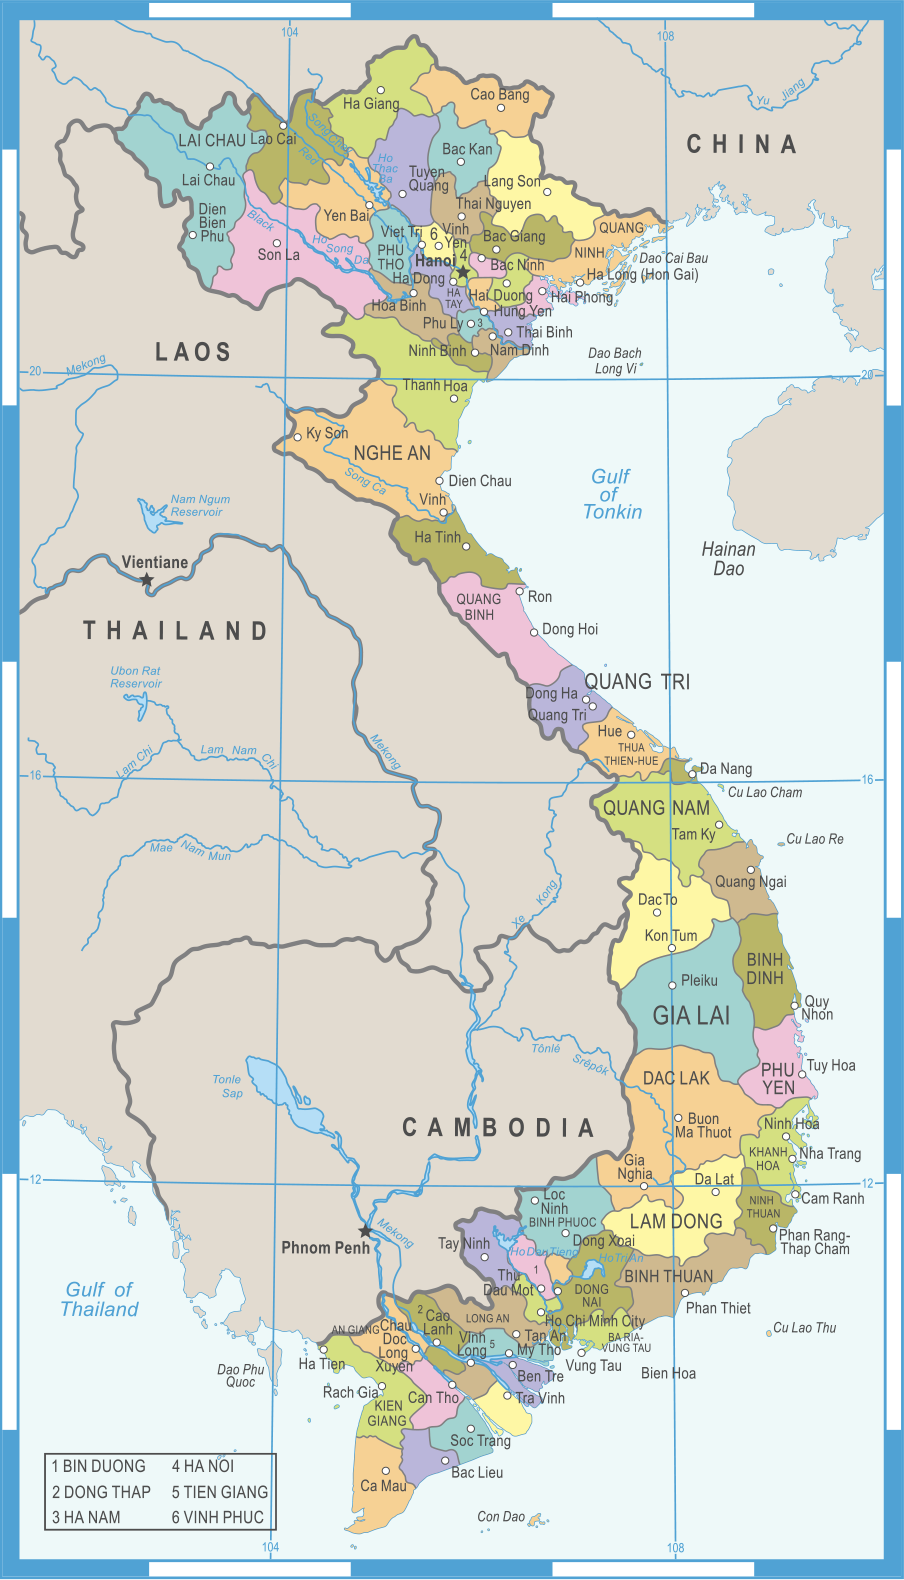 ベトナム社会主義共和国（Socialist Republic of Viet Nam）